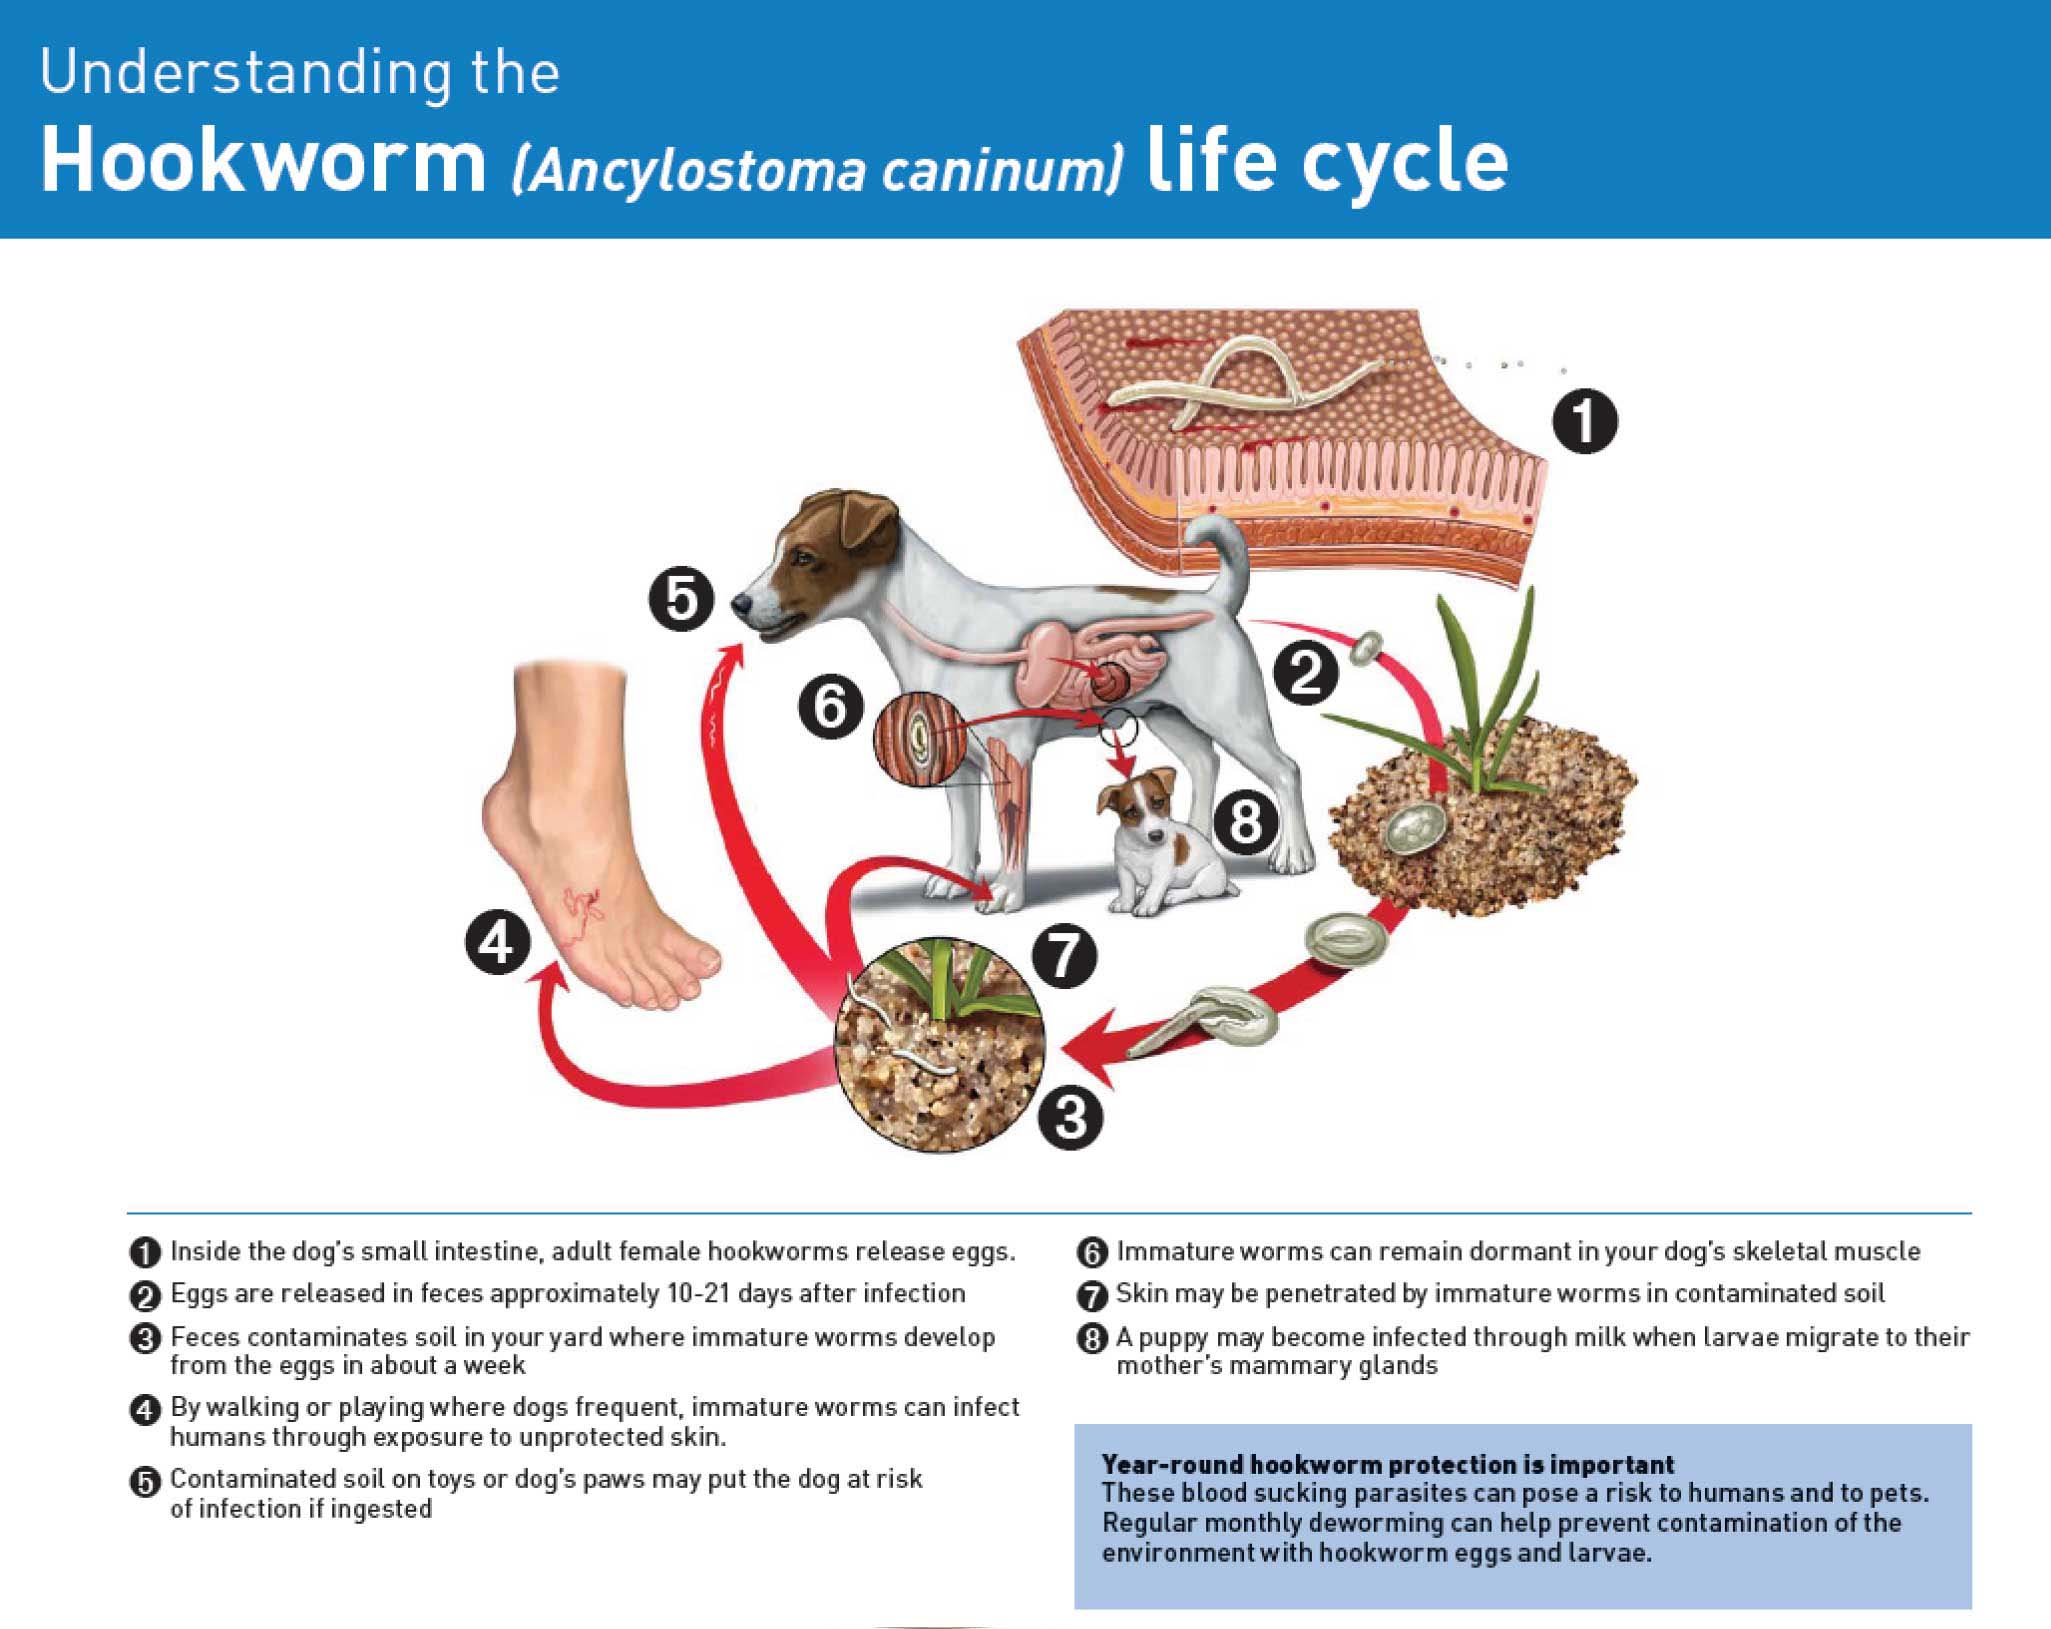 Hookworm lifecycle